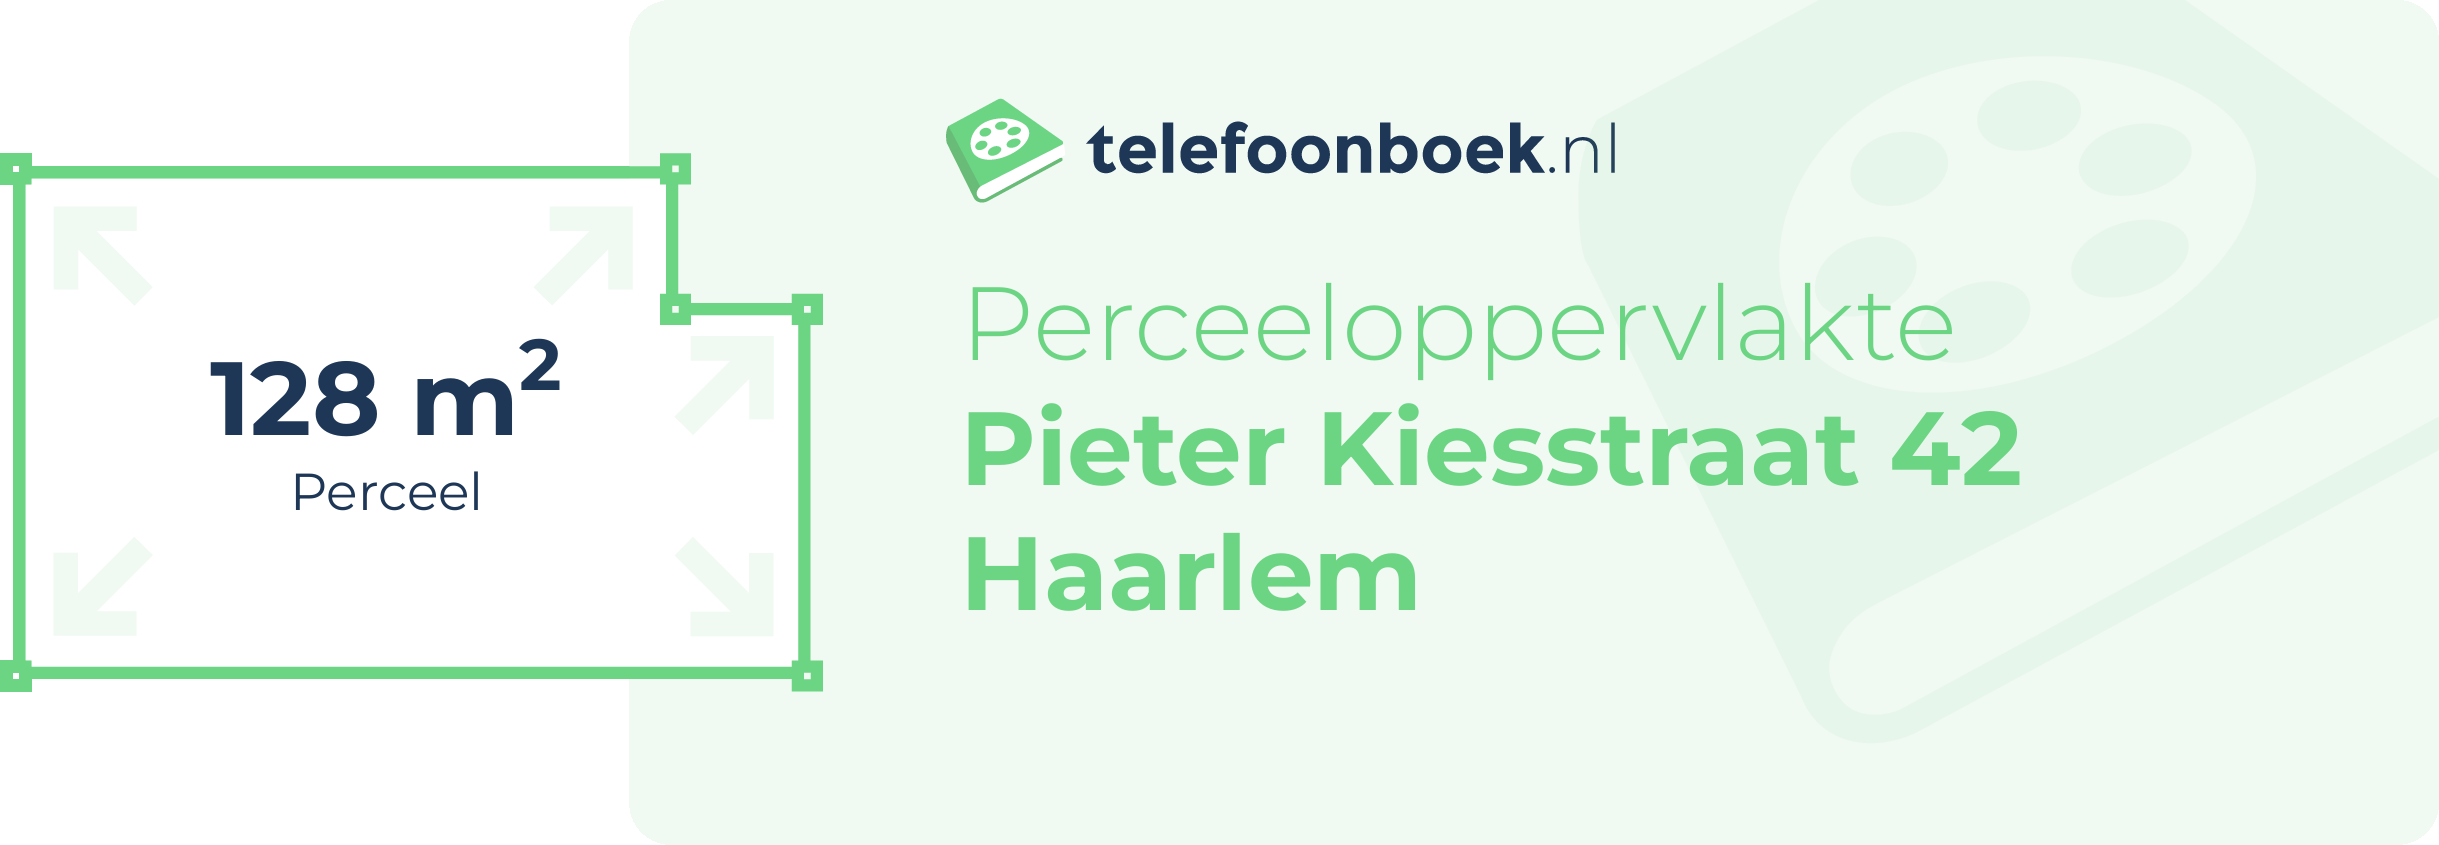 Perceeloppervlakte Pieter Kiesstraat 42 Haarlem